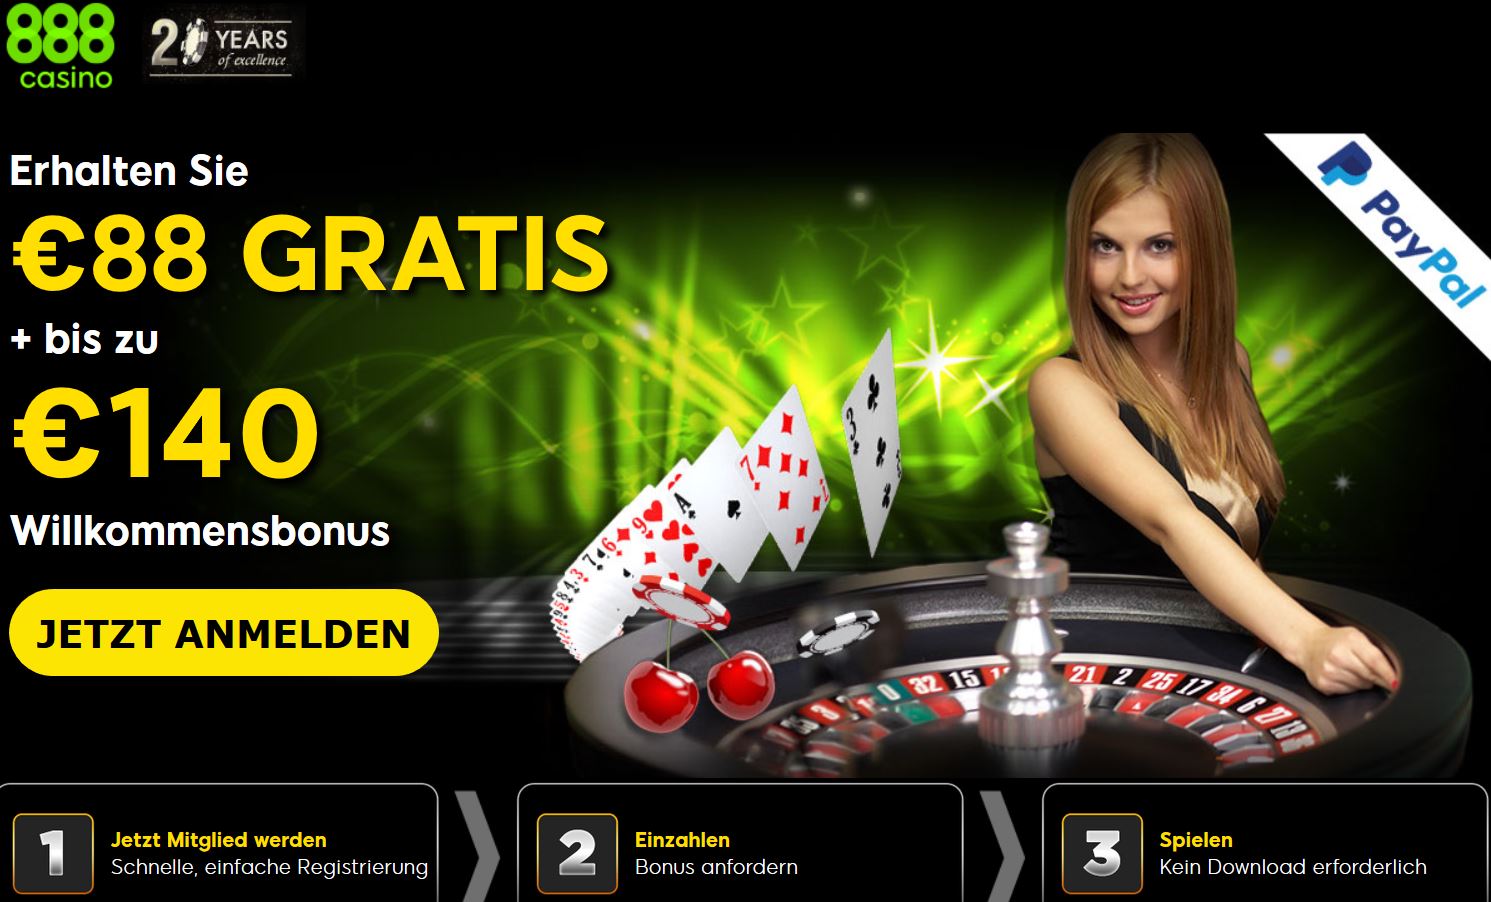 888 casino регистрация 888casino das. Игровые автоматы казино 888. 888 Poker Casino Bonus.